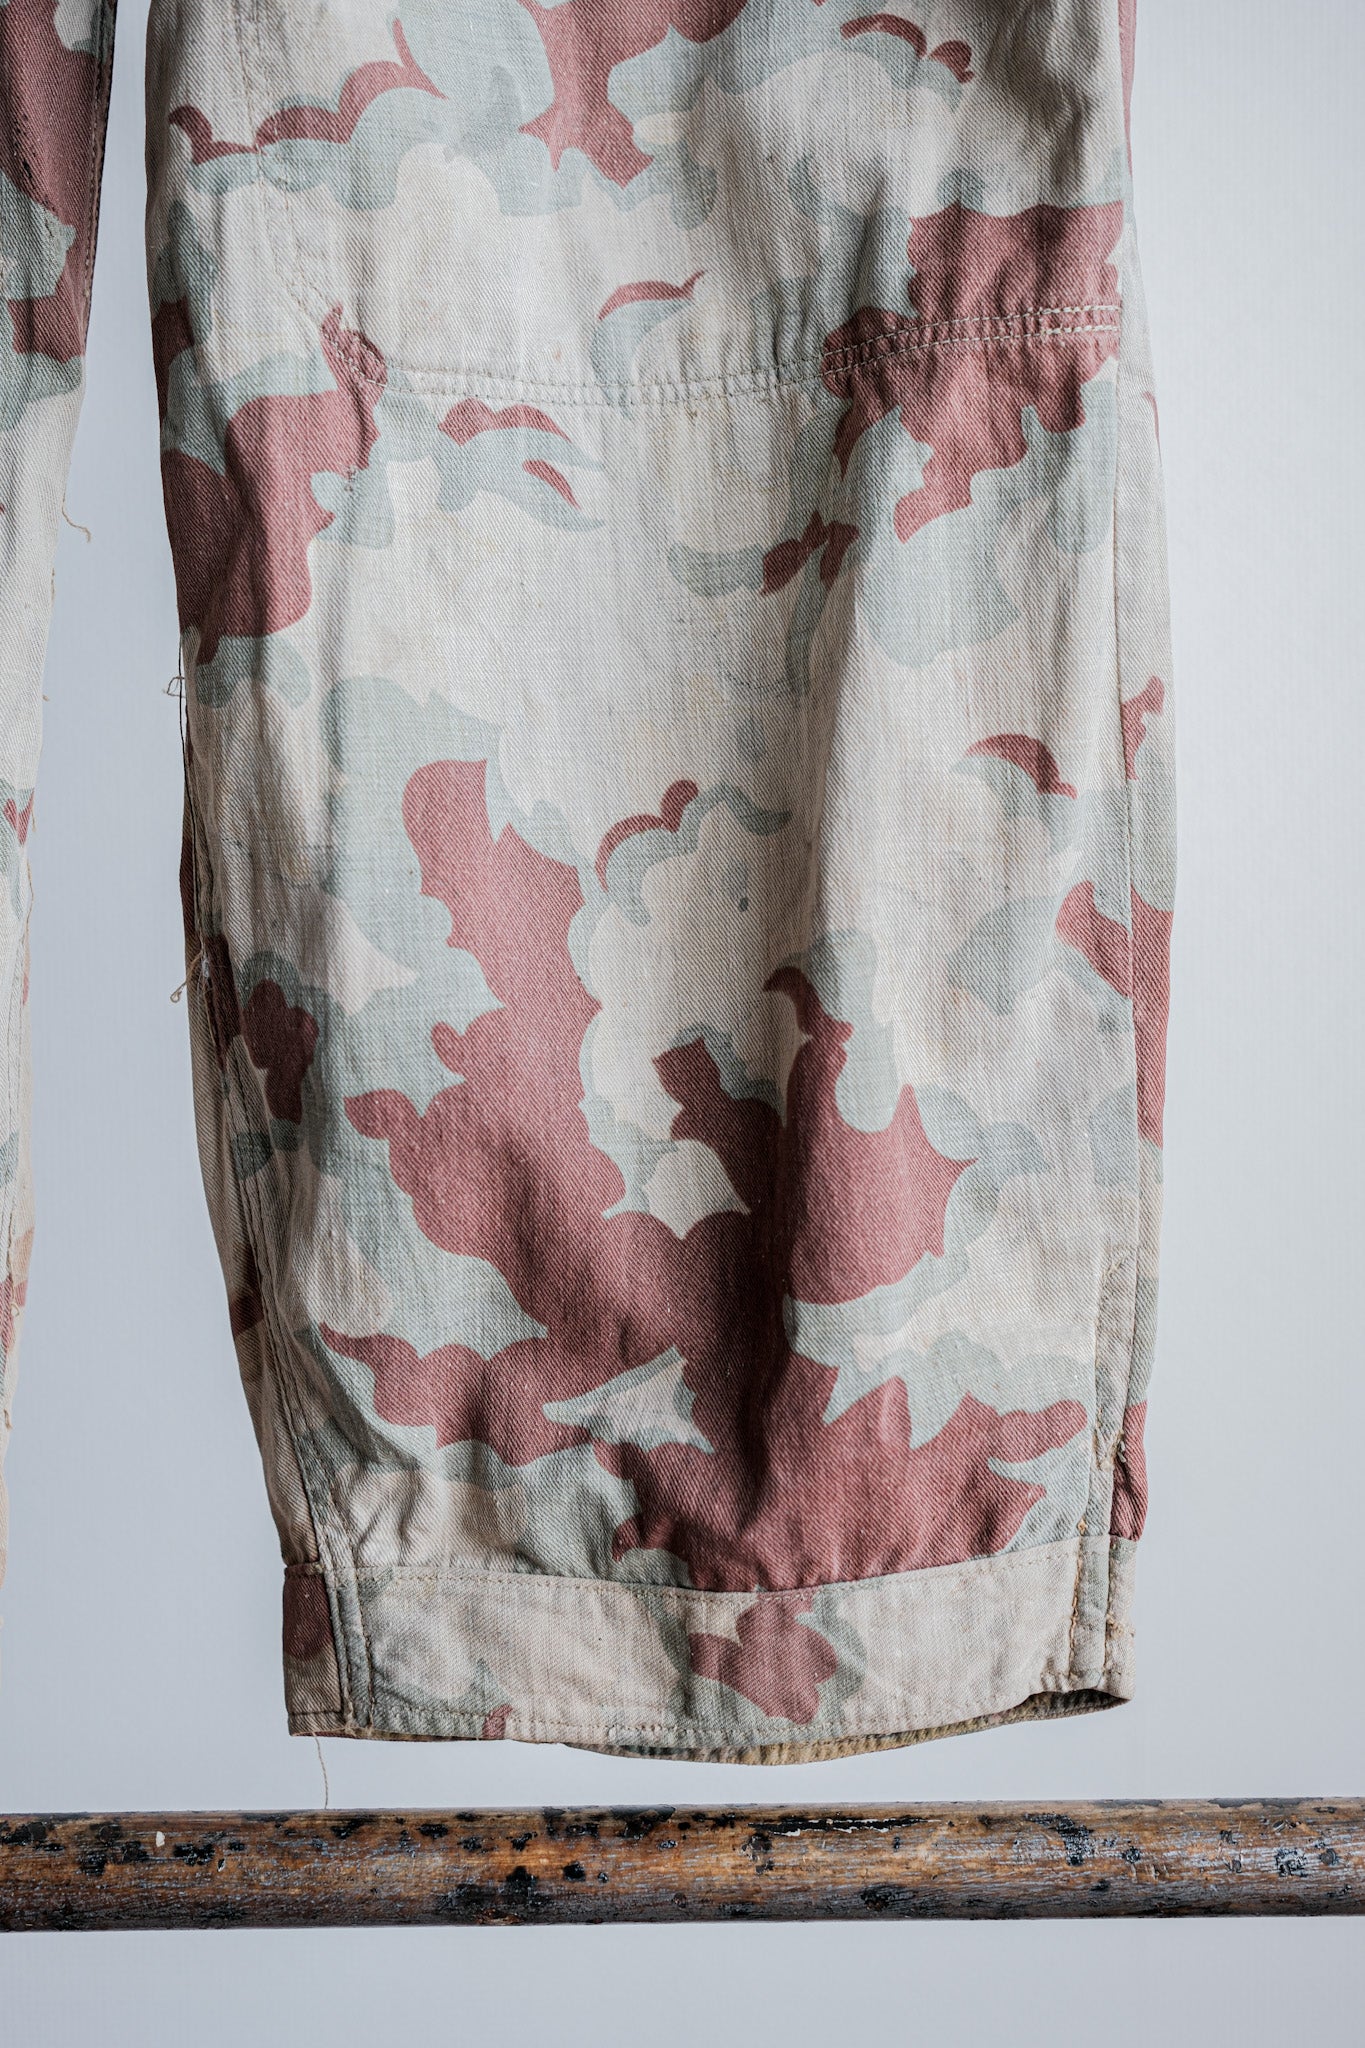 [〜50年代]捷克斯洛伐克軍隊雲掩蓋了可逆的褲子“修改”